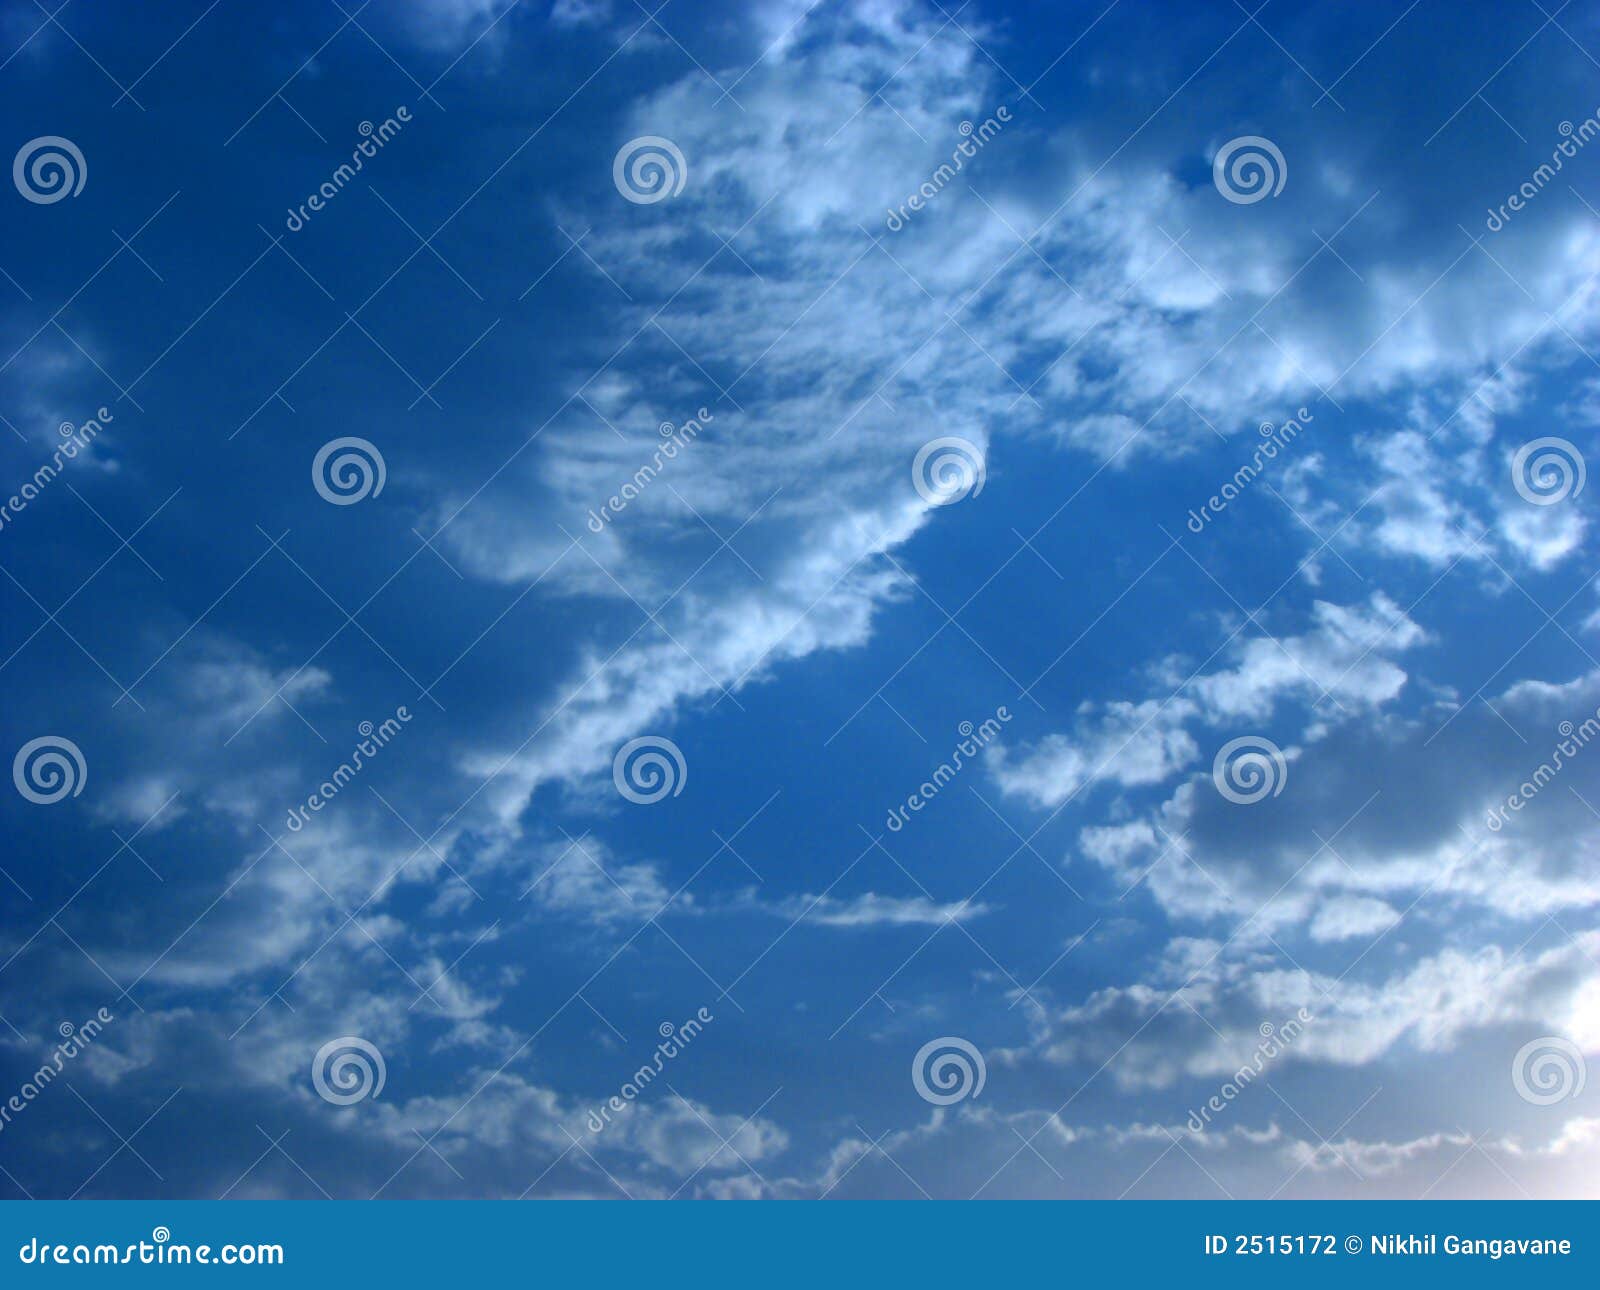 Blaue Himmel. Eine schöne Abbildung der bewölkten blauen Himmel